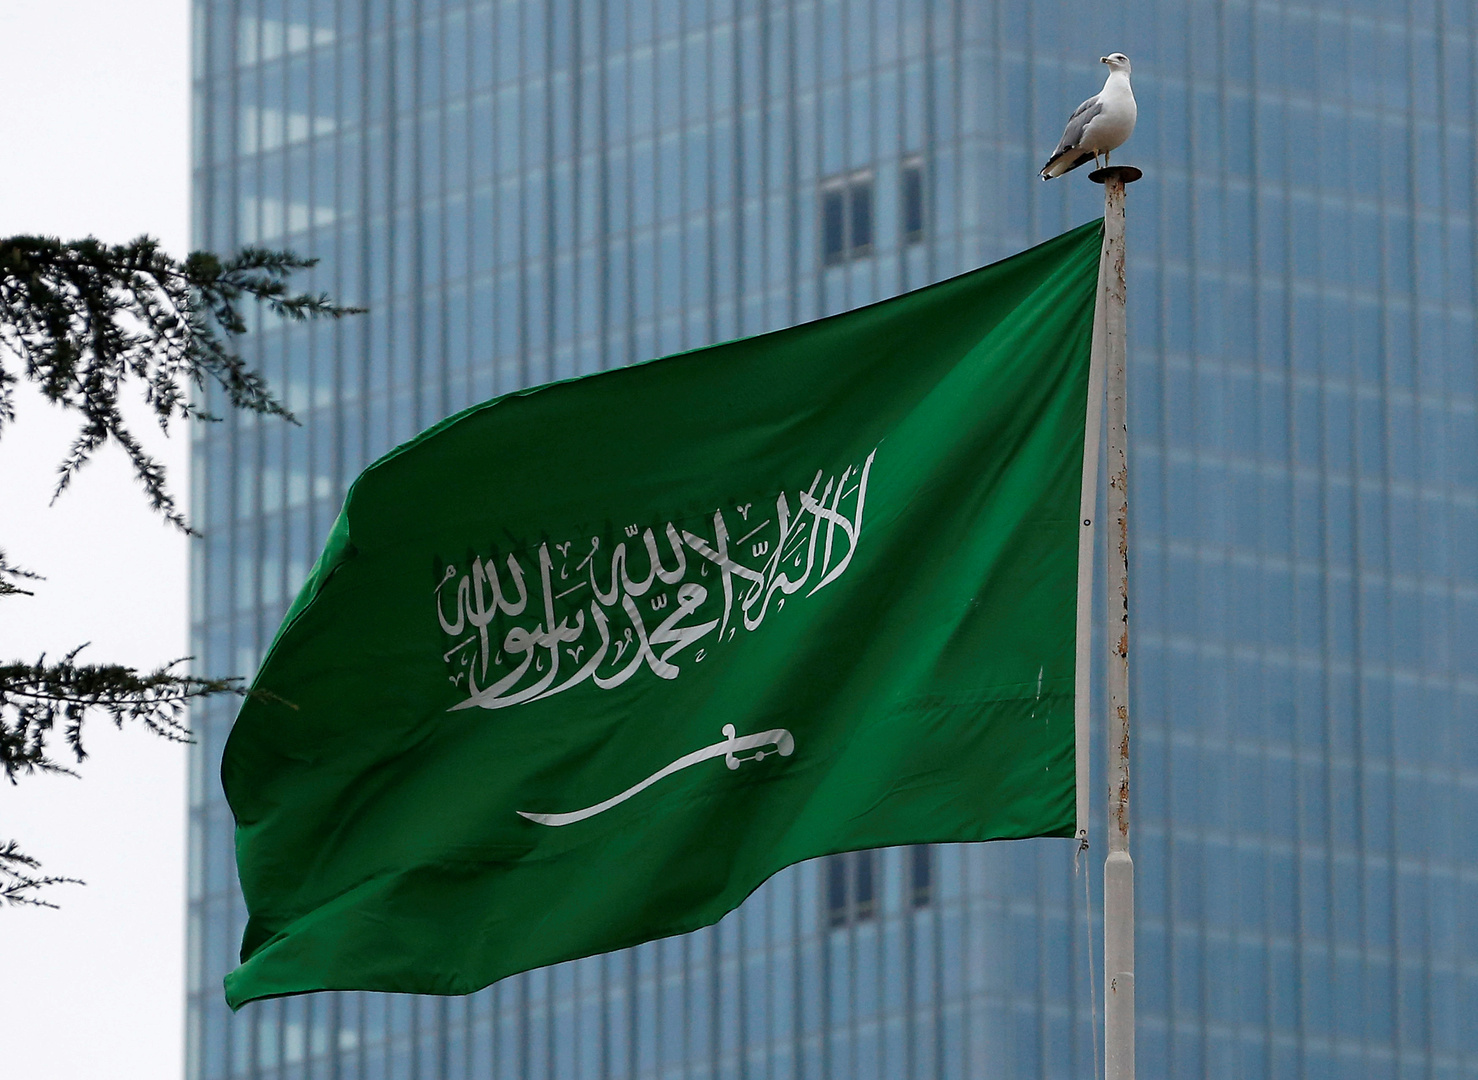 السعودية: نقف إلى جانب الأردن ونؤيد قرارات الملك عبدالله الثاني بالحفاظ على أمن بلاده